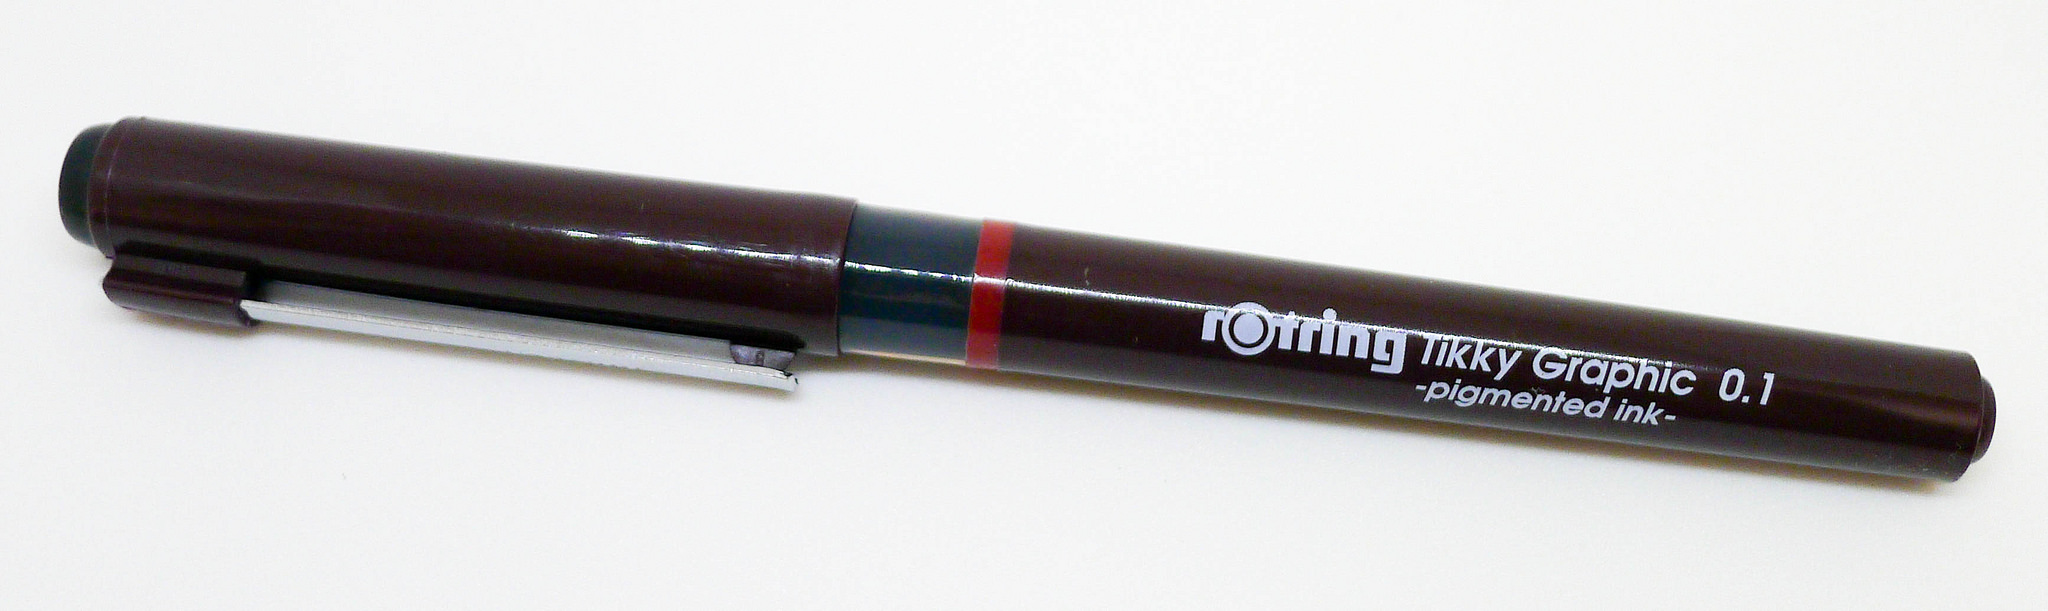 Rotring Tikky Pens